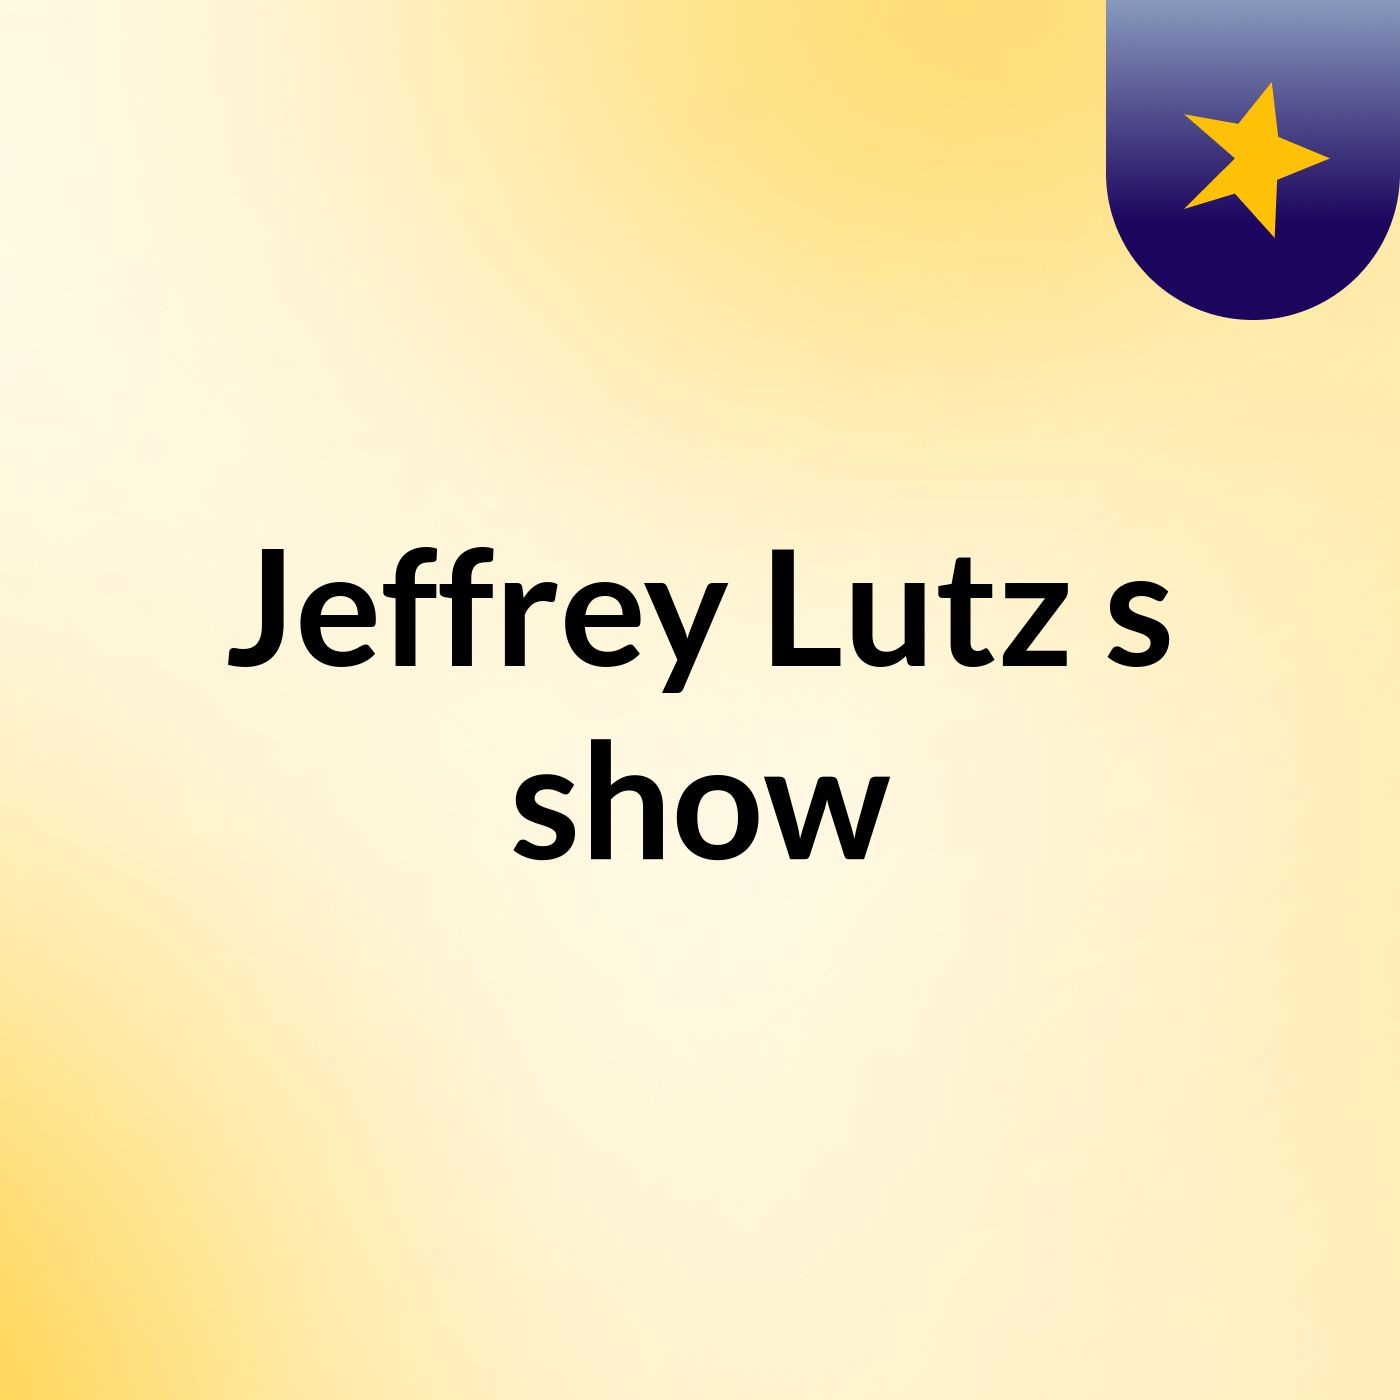 Jeffrey Lutz's show